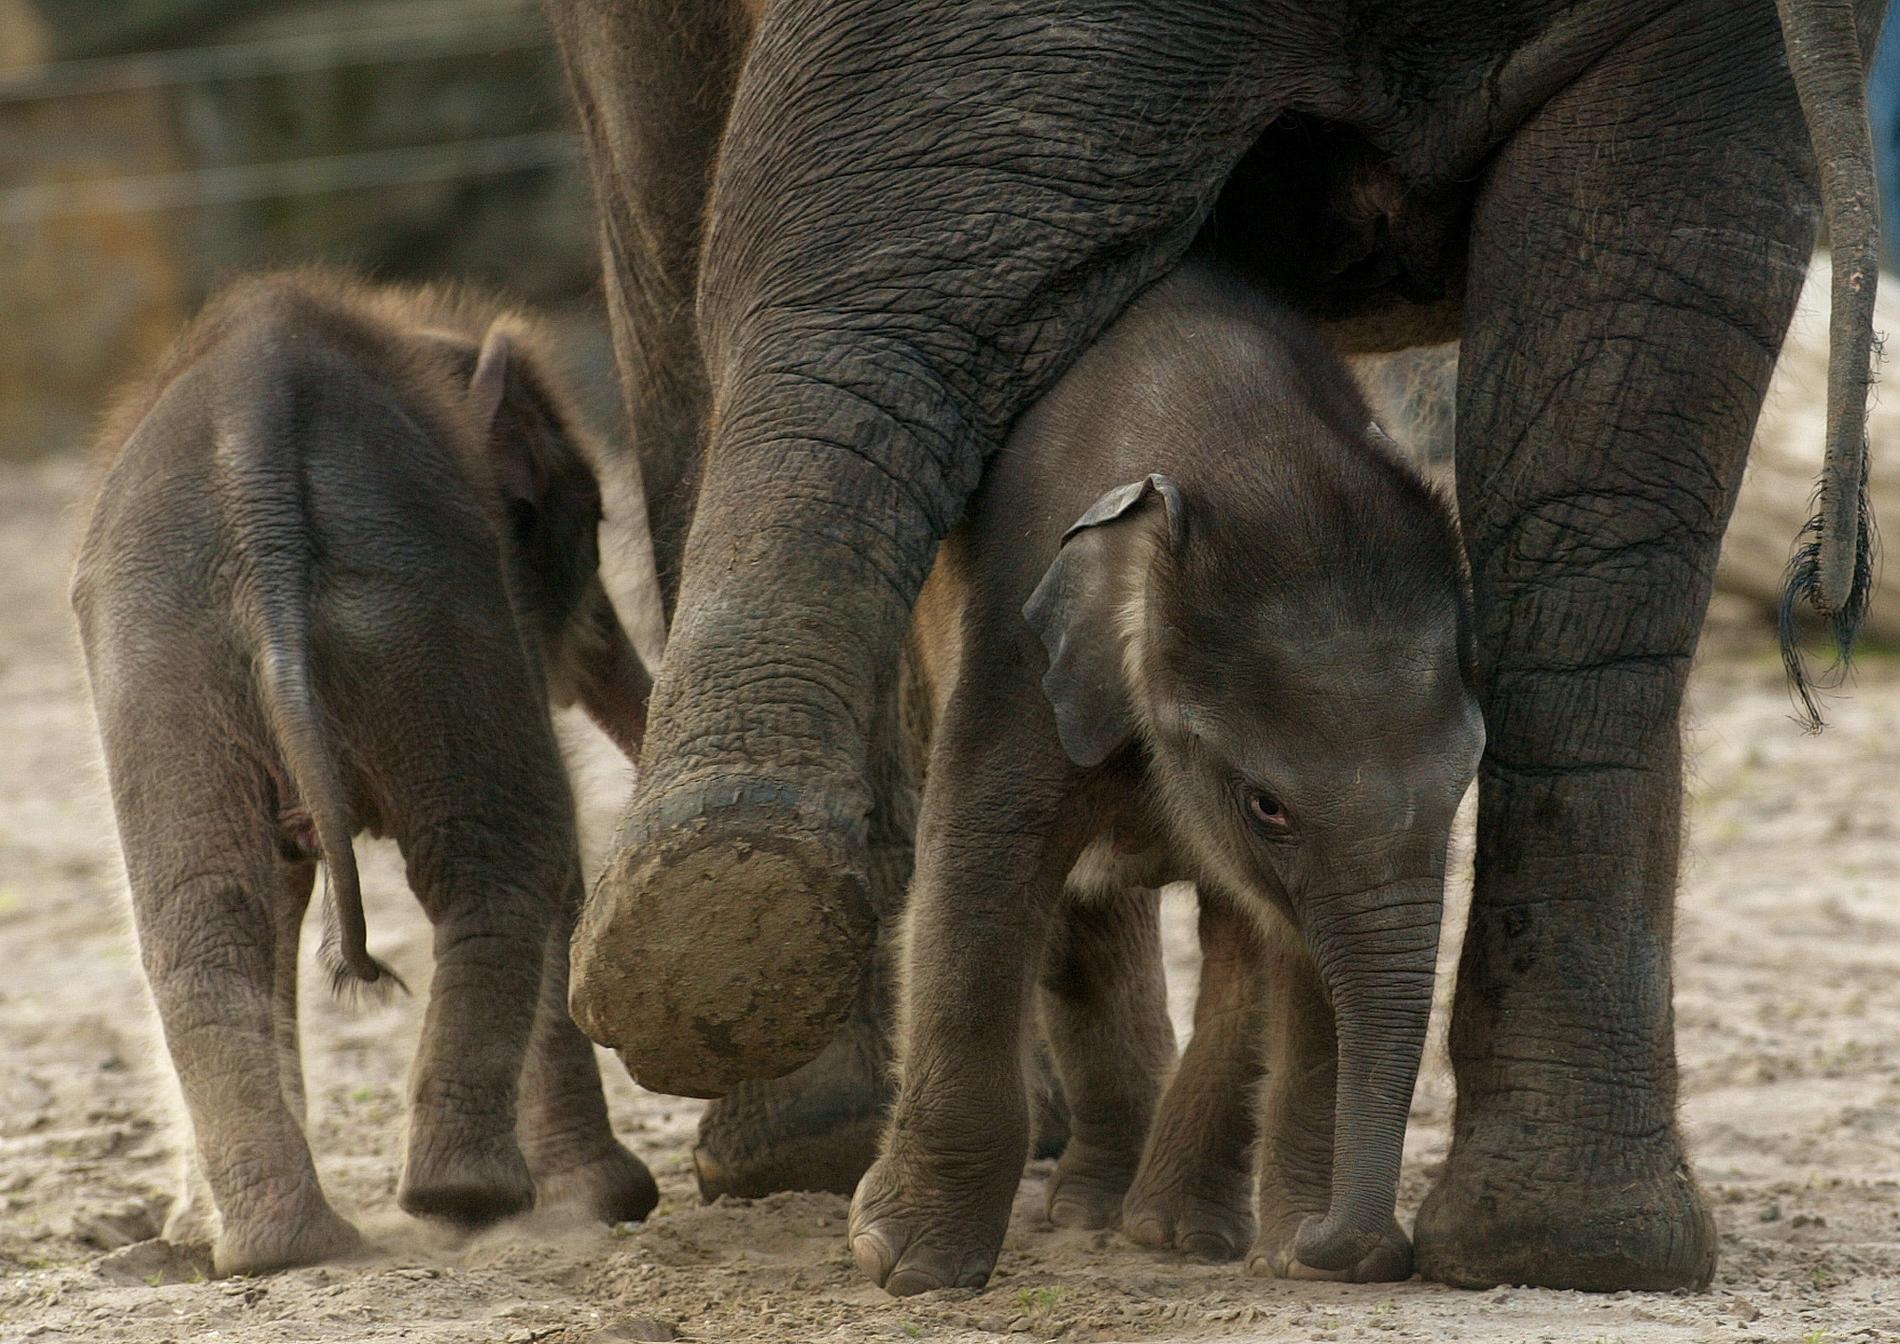 Tvillingfödslar är sällsynta bland elefanter. På bilden syns elefantsyskon på en djurpark i Berlin.